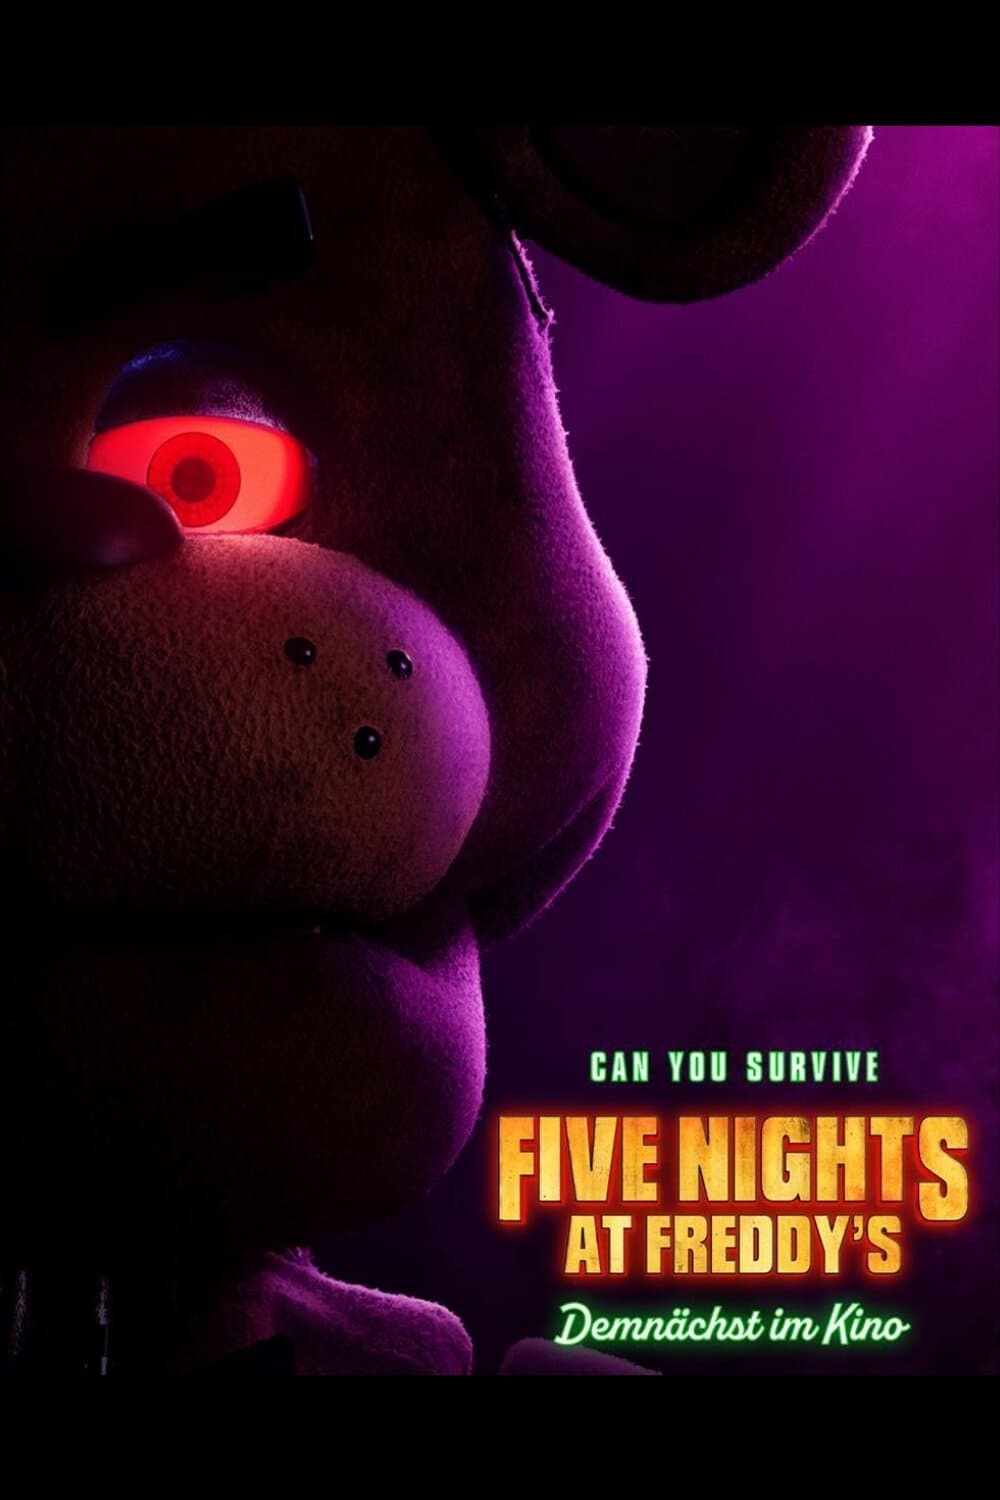 Stream Baixar!! Five Nights At Freddy's - O Pesadelo Sem Fim Filme (2023)  Completo Dublado em portugues by ive Nights At Freddy's - O Pesadelo Sem  Fim (2023)